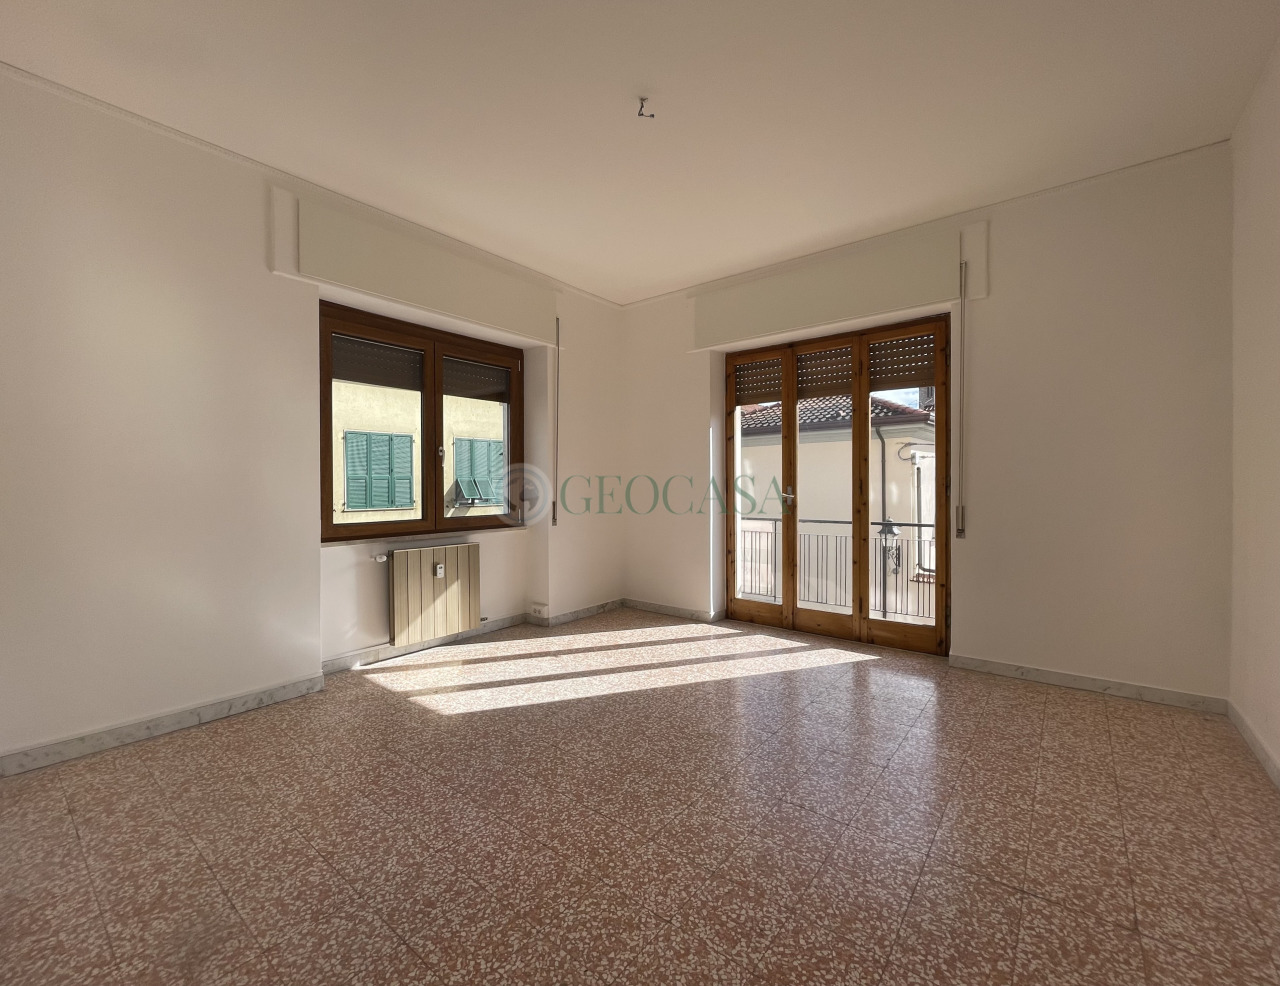 Appartamento in vendita a Sarzana, 4 locali, prezzo € 215.000 | PortaleAgenzieImmobiliari.it